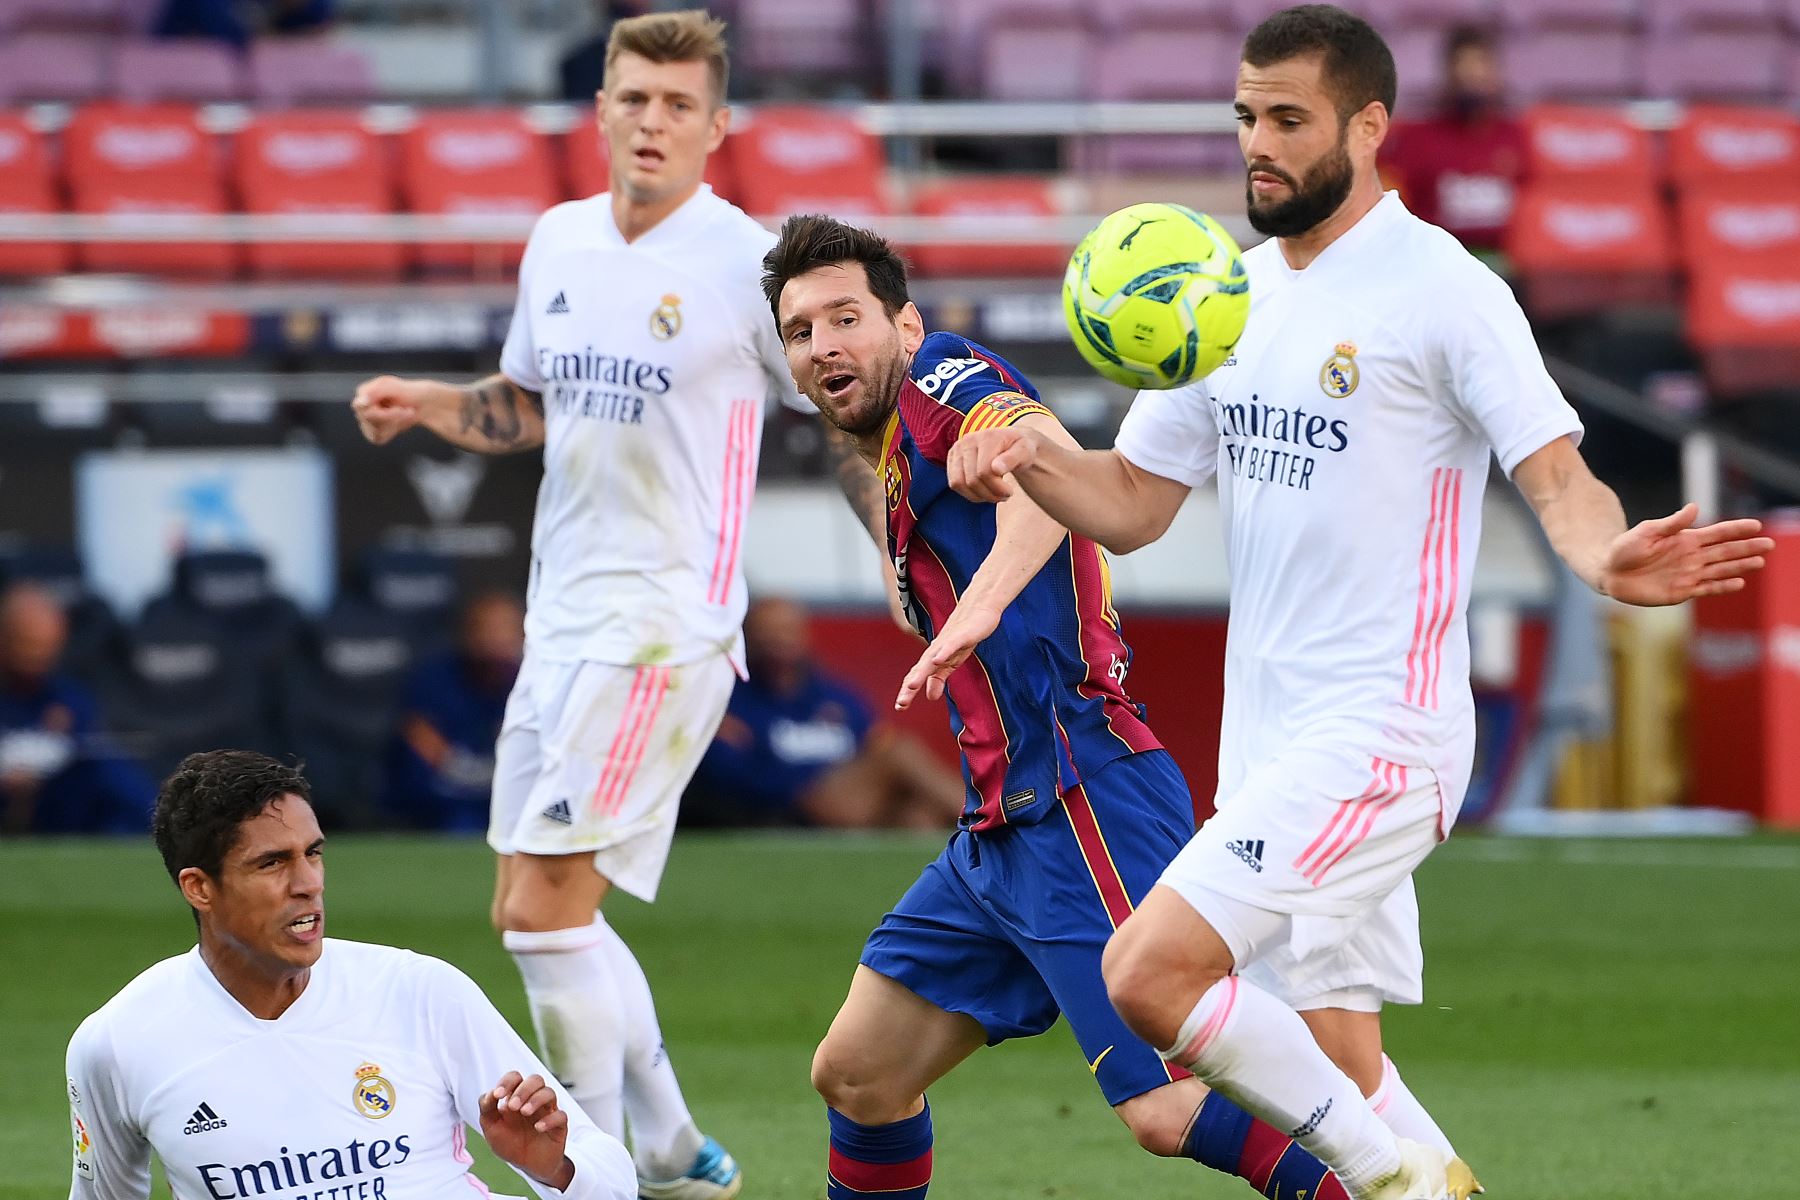 El delantero Leonel Messi, disputa el balón, durante el partido de fútbol de la Liga española entre Barcelona y Real Madrid. Foto: AFP